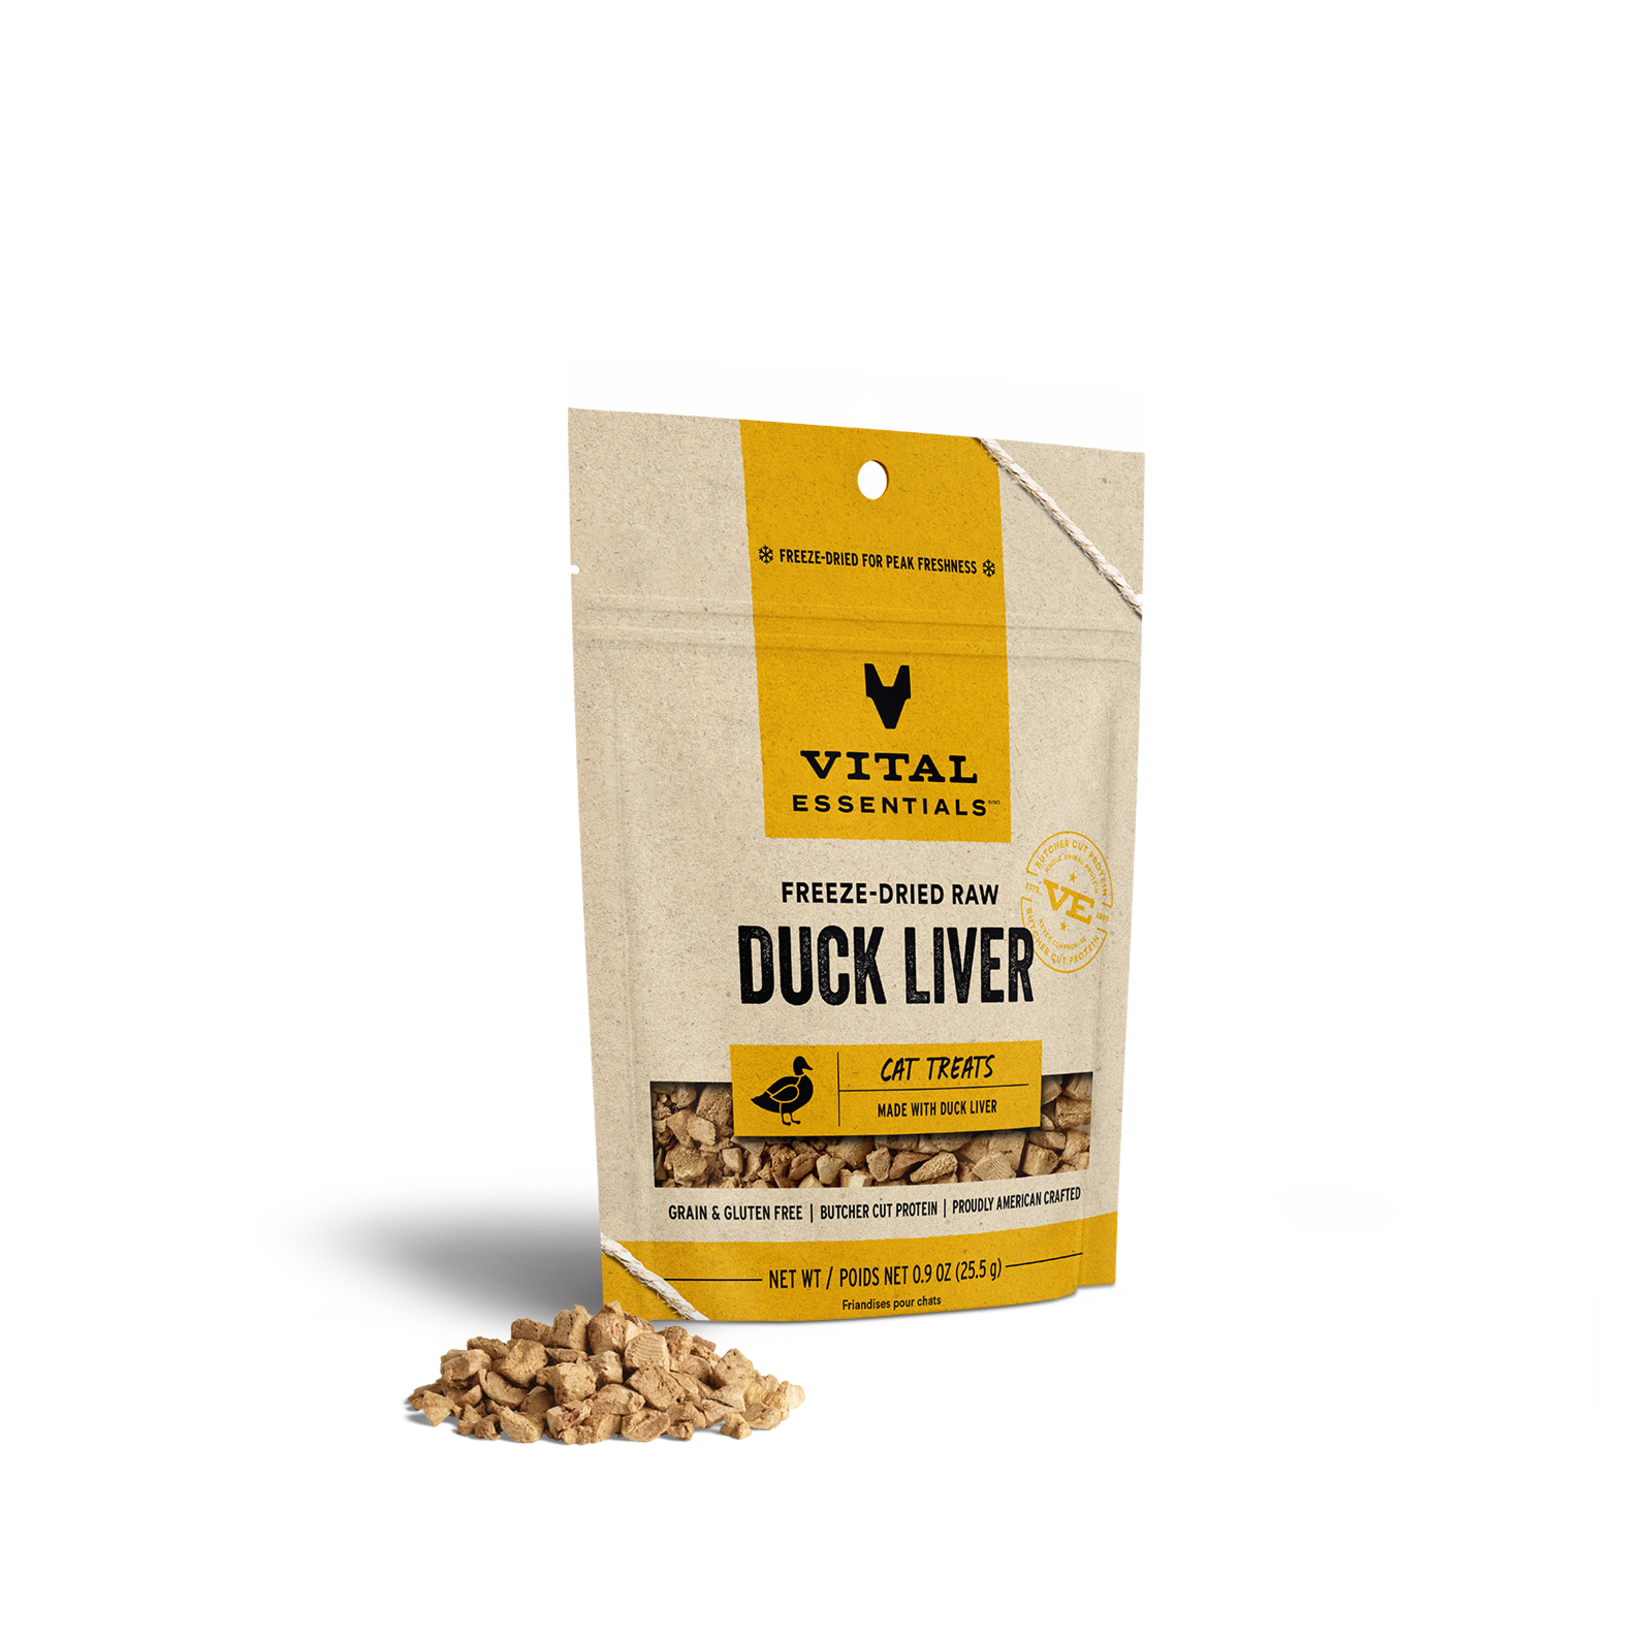 Vital Essentials Vital Essentials Freeze Dried Raw Cat Treats Duck Liver .9oz